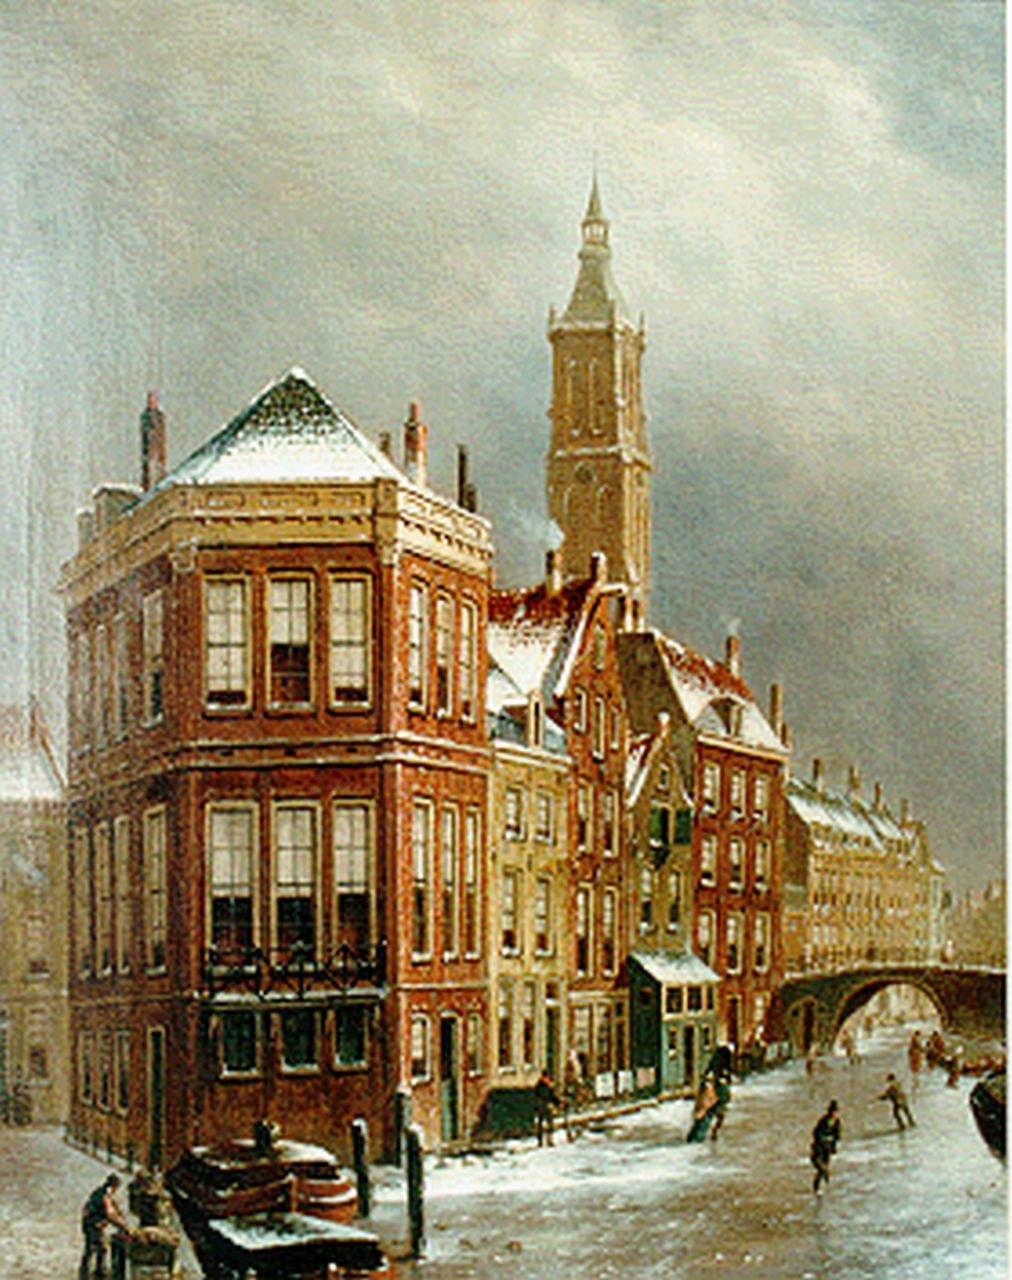 Jongh O.R. de | Oene Romkes de Jongh, View of 't Kolkje, Amsterdam, Öl auf Leinwand 67,0 x 54,0 cm, signed l.l.